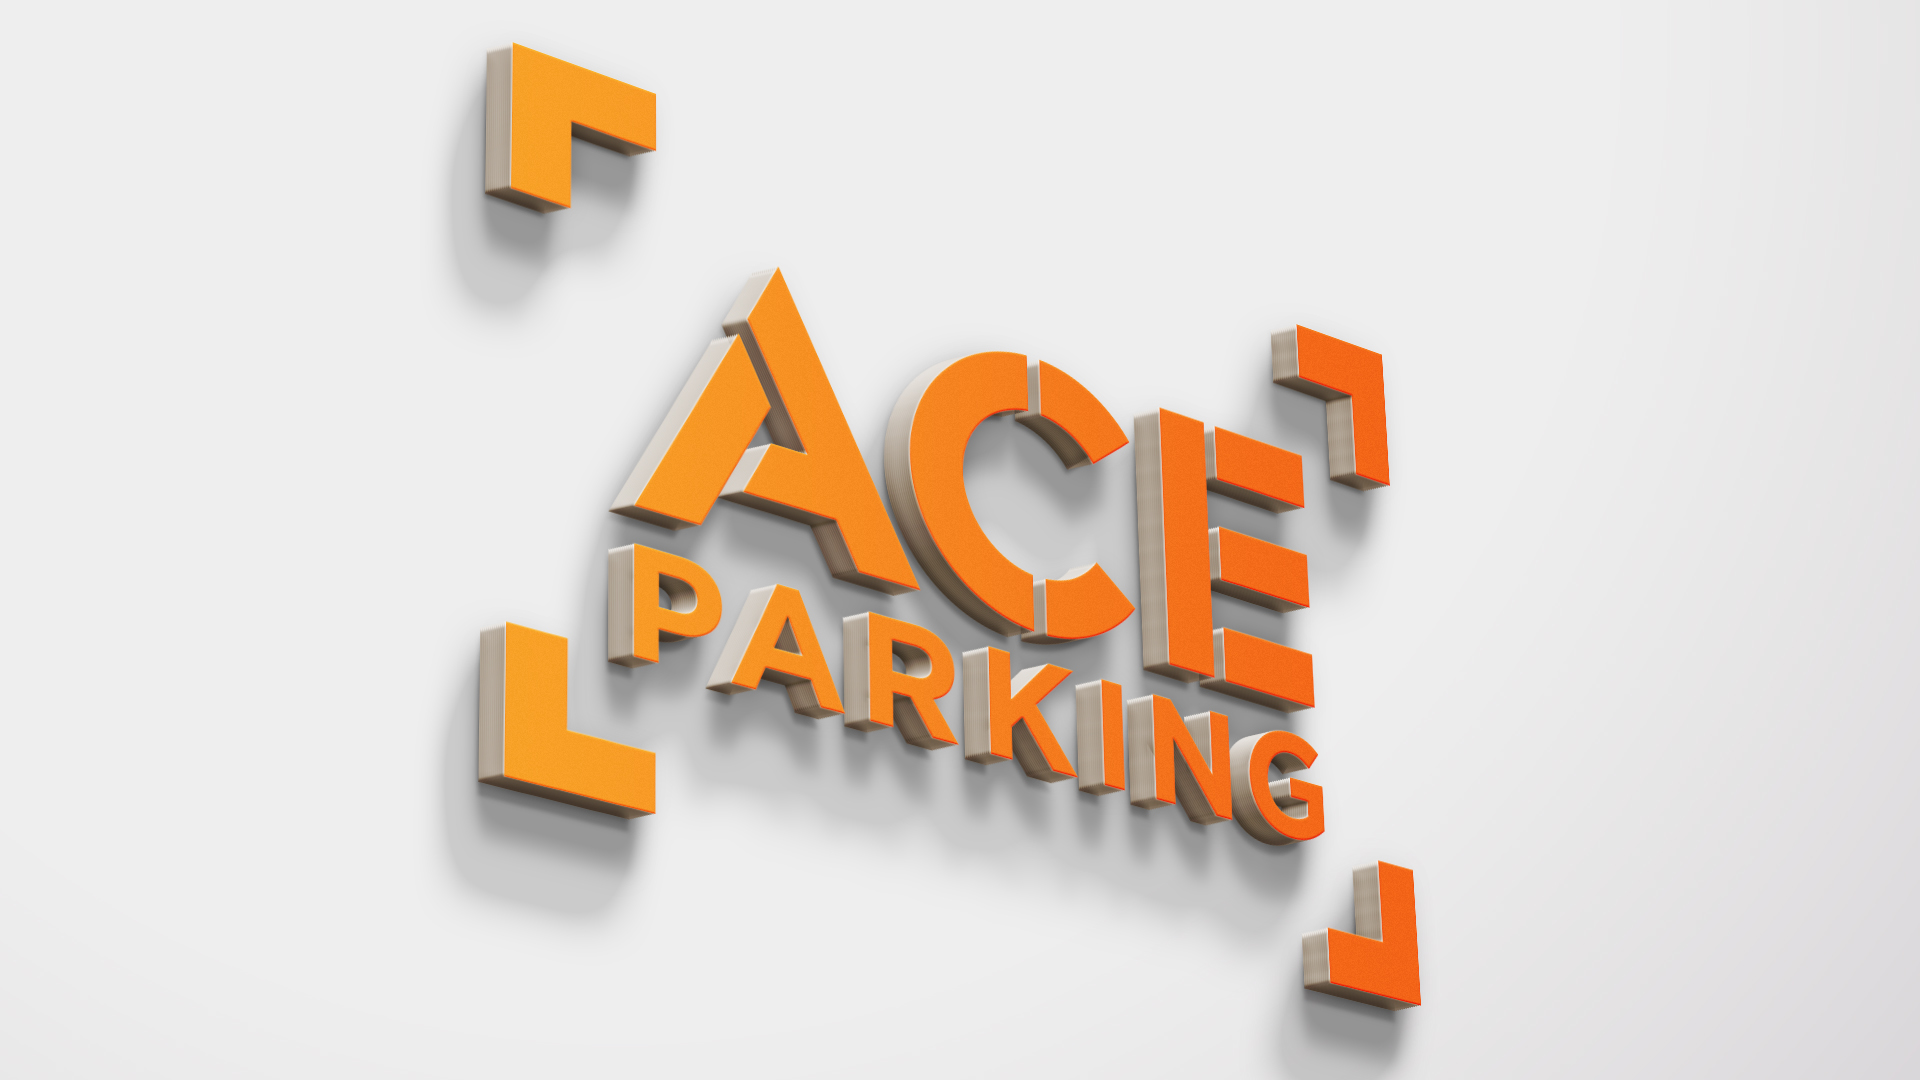 Ace_Parking